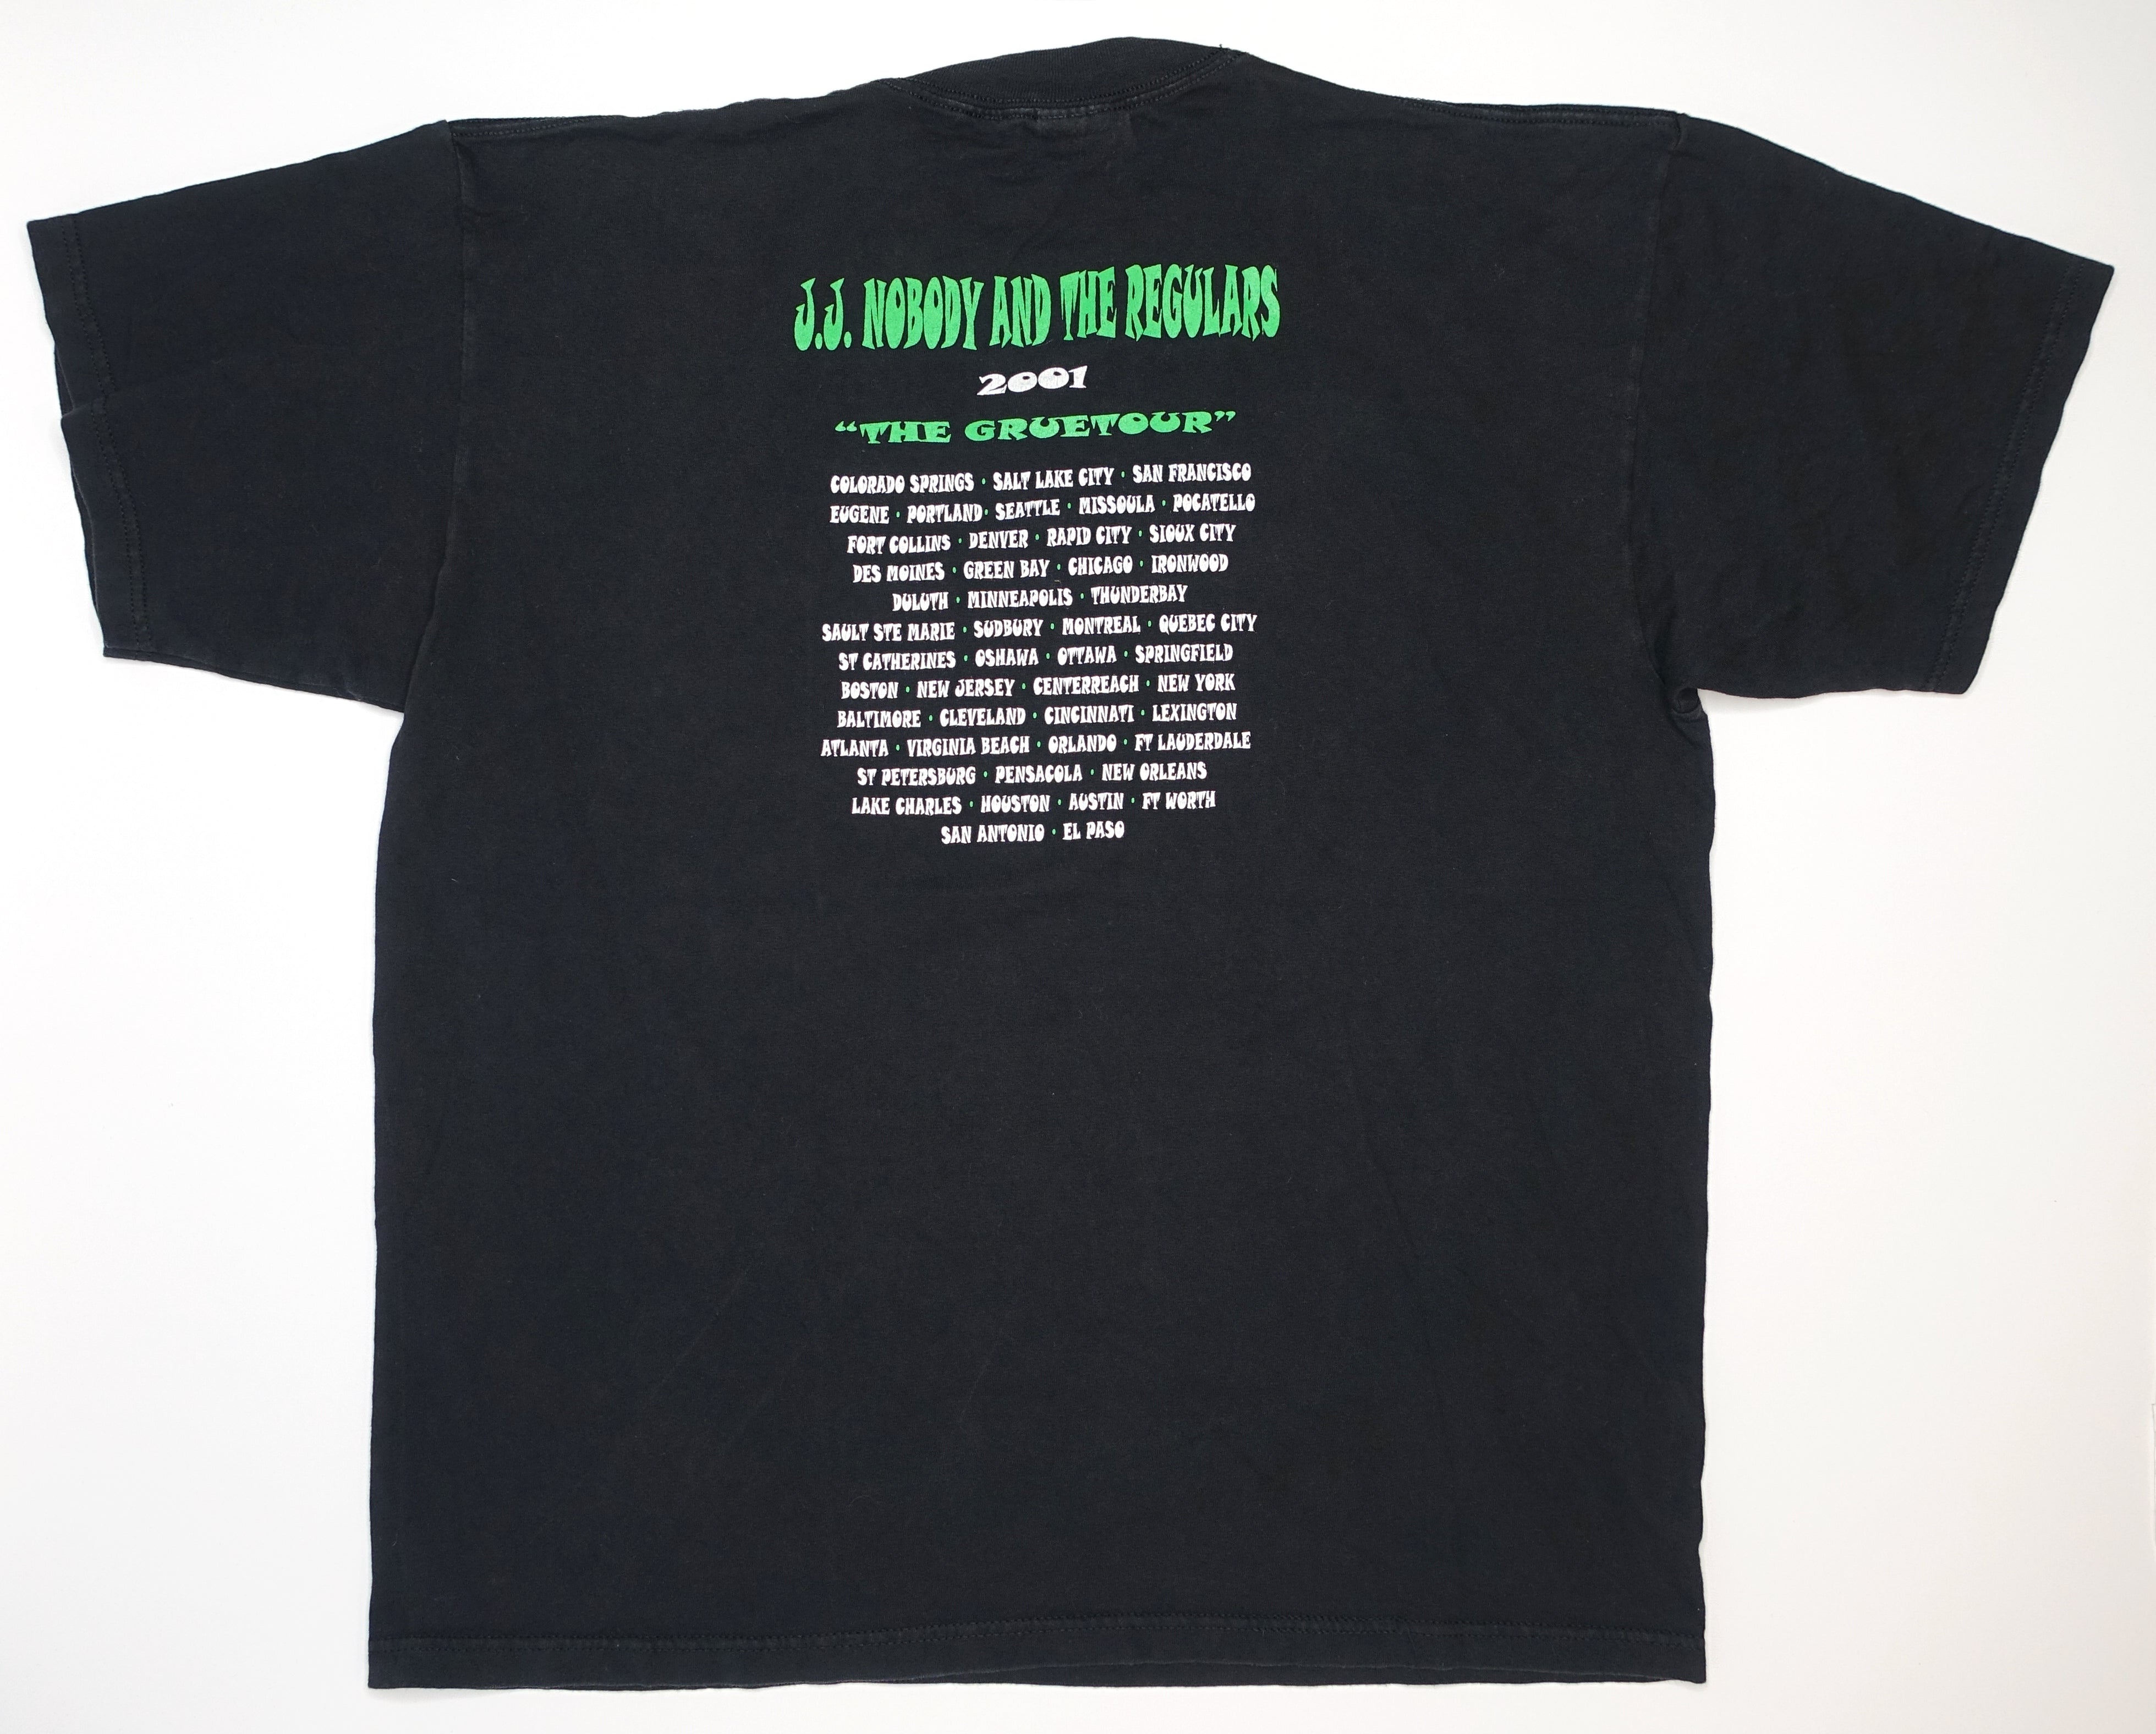 Nobodys - Who The Fuck Is JJ Nobody? 2001 Gruetour Shirt Size XL (Copy)